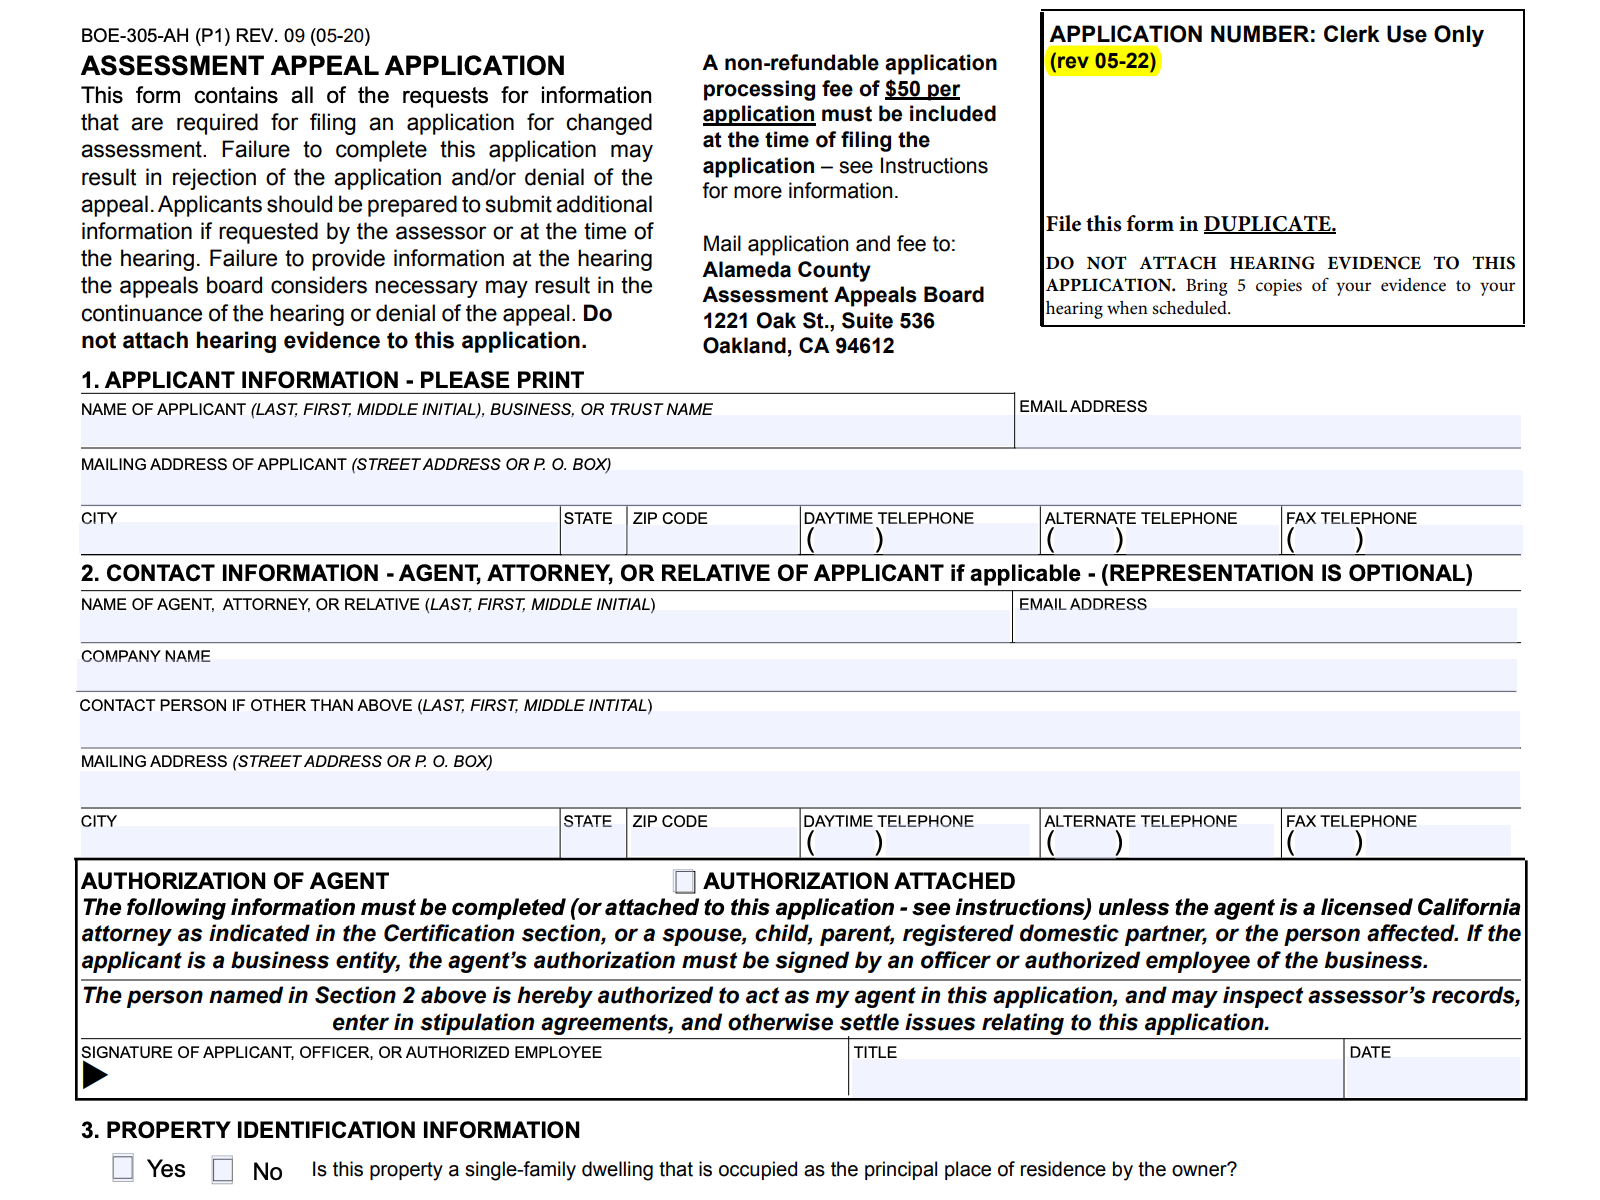 Screenshot Tax Appeal Form